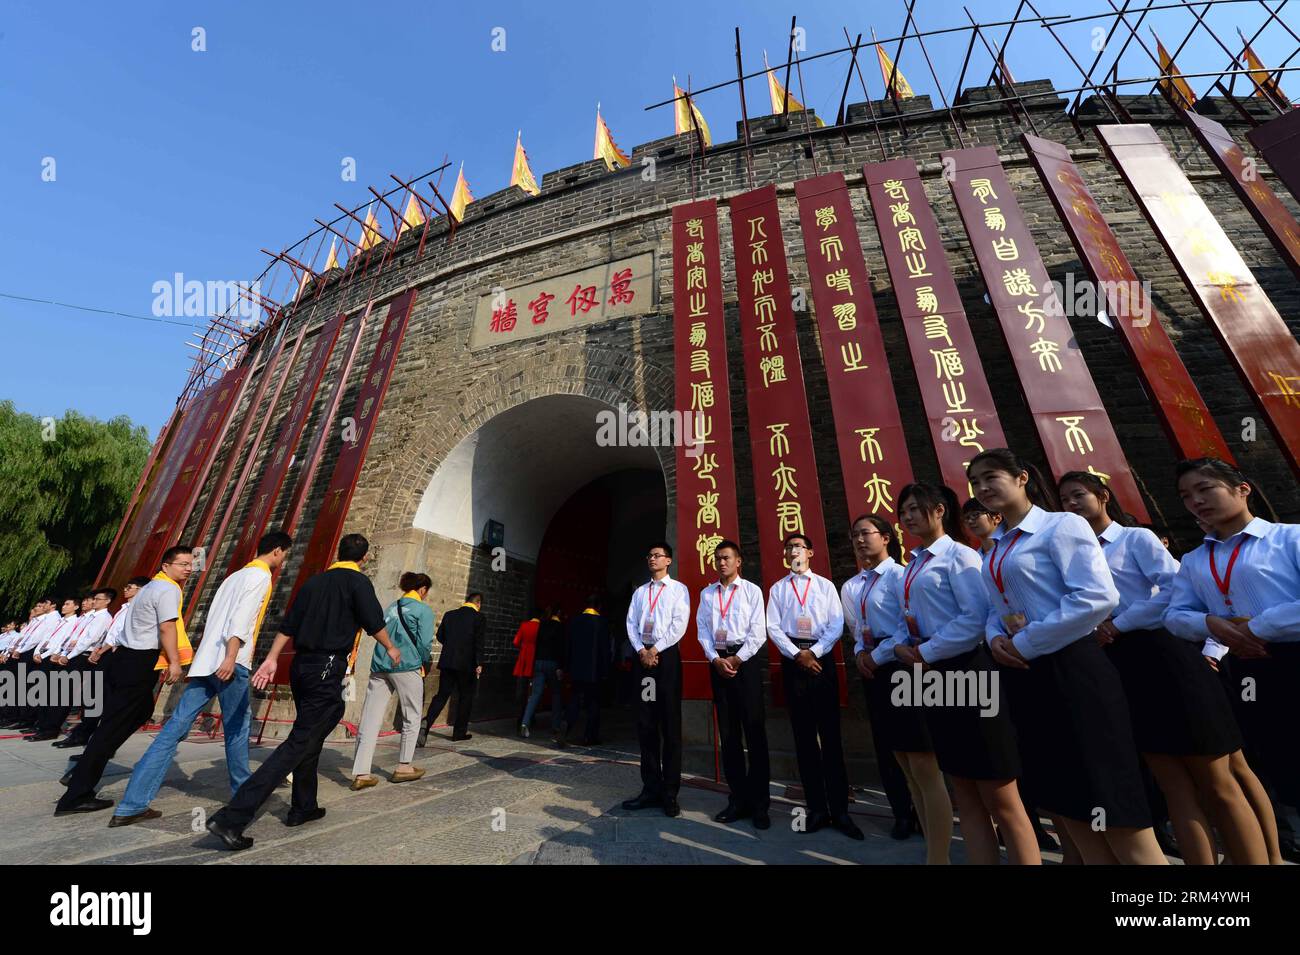 Bildnummer : 60537598 Datum : 28.09.2013 Copyright : imago/Xinhua (130928) -- QUFU, 28 septembre 2013 (Xinhua) -- les délégués assistent à une cérémonie commémorative pour marquer le 2 564e anniversaire de Confucius au temple de Confucius à Qufu, dans la province du Shandong de l'est de la Chine, le 28 septembre 2013. Qufu est connue comme la ville natale du grand philosophe et éducateur chinois Confucius. (Xinhua/Guo Xulei) (ry) CHINE-QUFU-CONFUCIUS-ANNIVERSAIRE (CN) PUBLICATIONxNOTxINxCHN xas x0x 2013 quer 60537598 Date 28 09 2013 Copyright Imago XINHUA Qufu sept 28 2013 les délégués XINHUA assistent à une cérémonie commémorative Banque D'Images